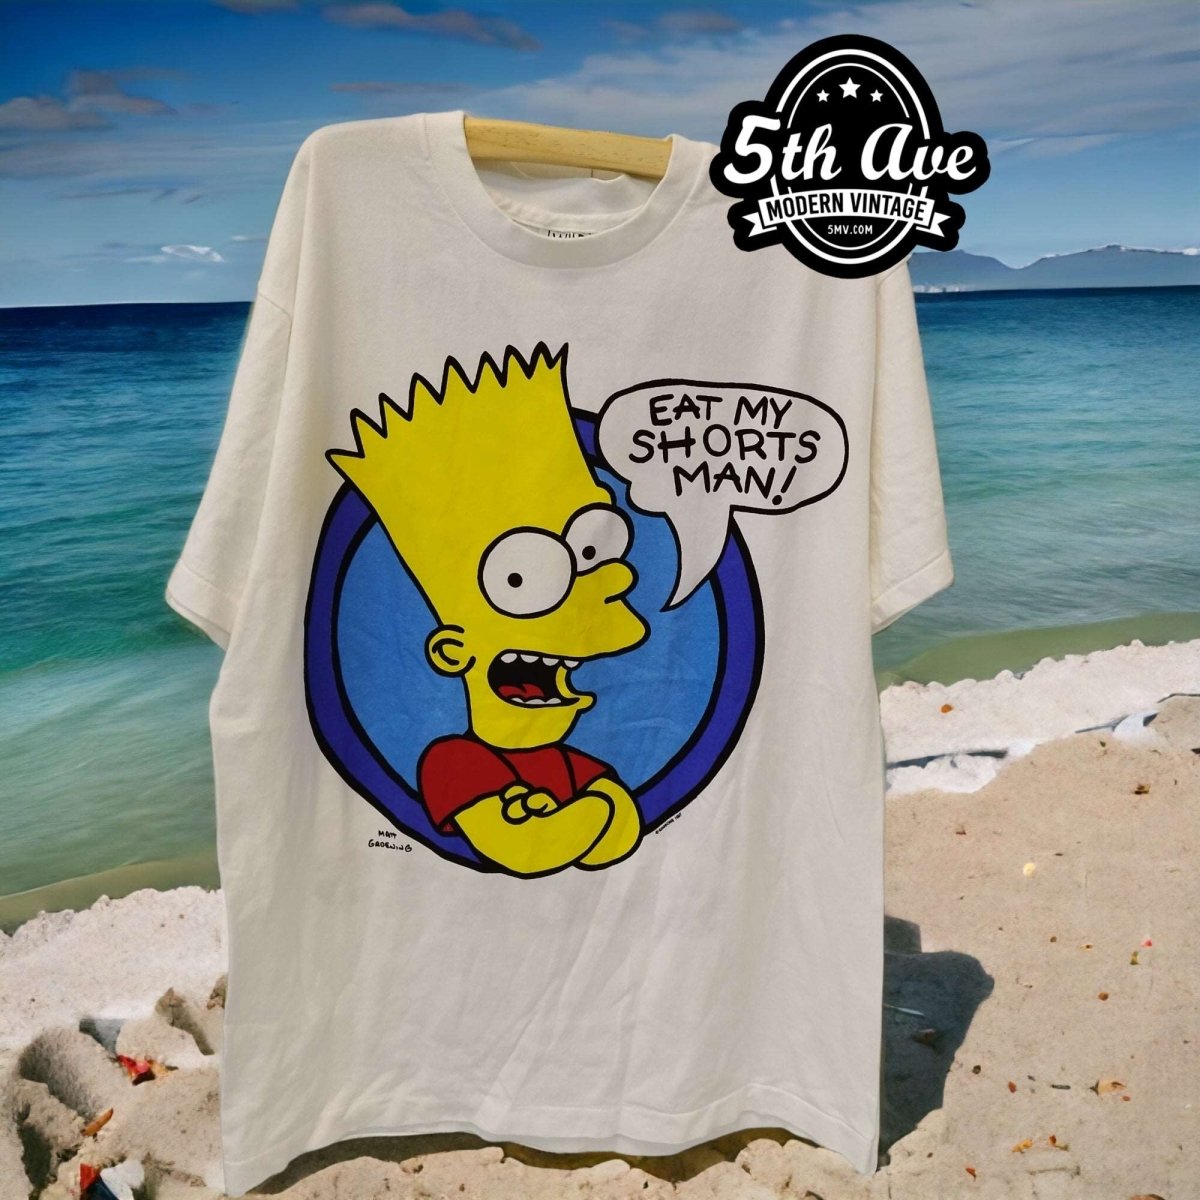 Bart Simpson Eat My Shorts Man! t shirt - Vintage Band Shirts